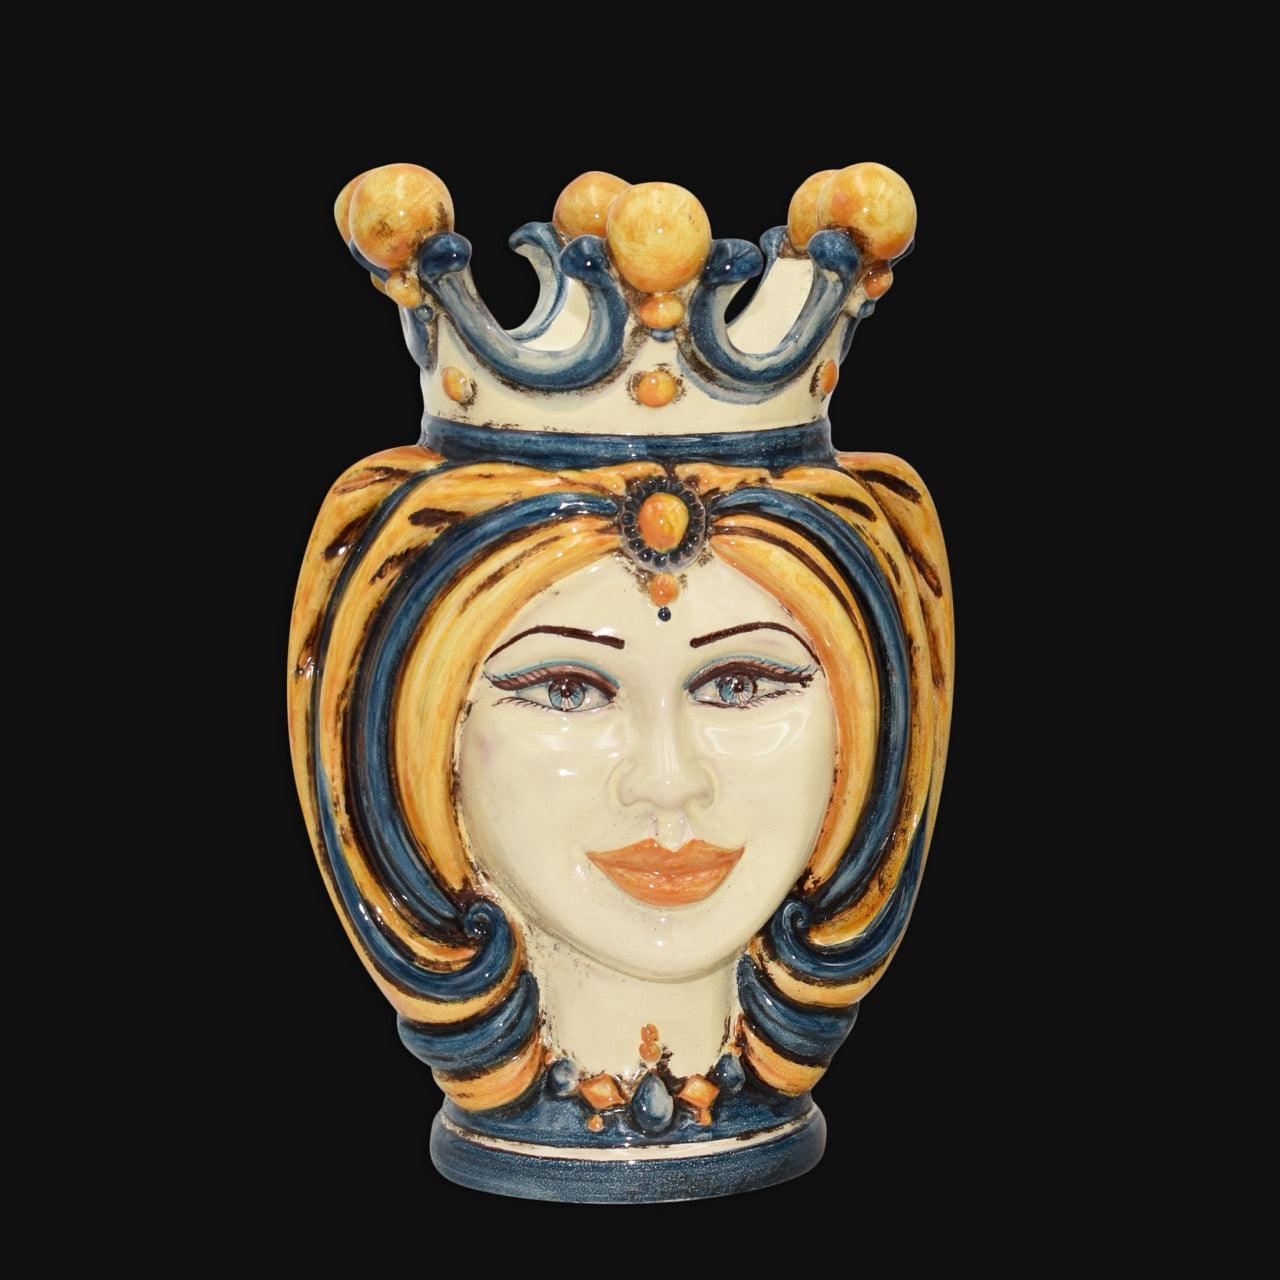 Testa h 25 turbante blu/arancio - Ceramiche di Caltagirone Sofia - Ceramiche di Caltagirone Sofia